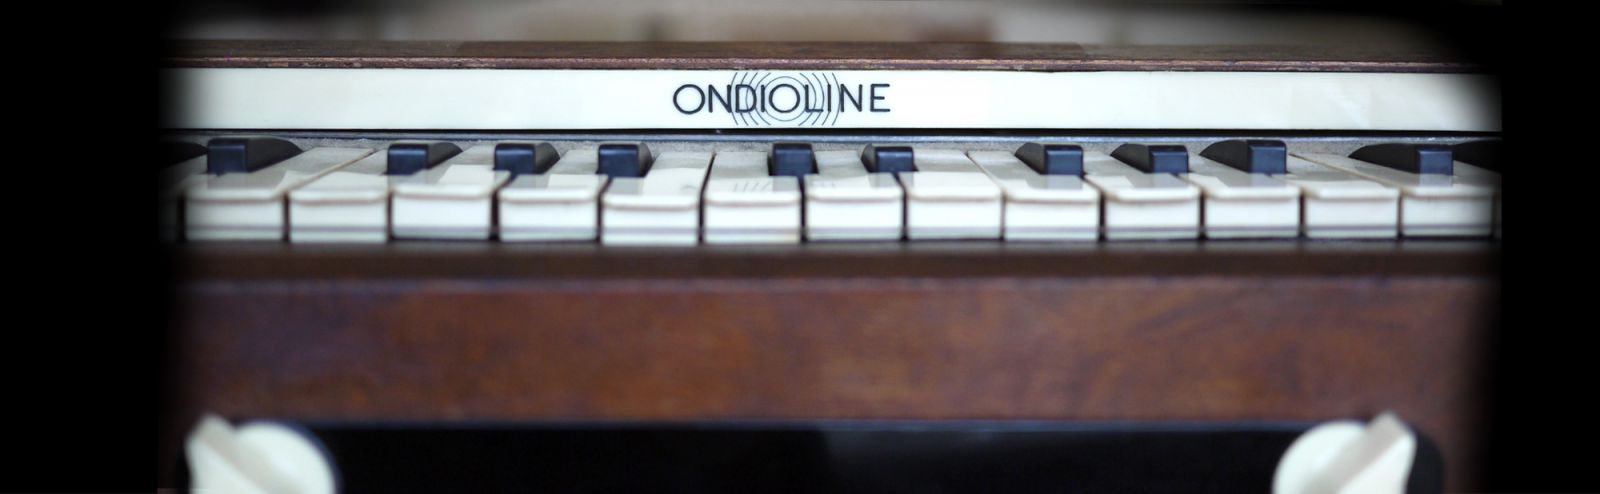 Soniccouture Ondioline